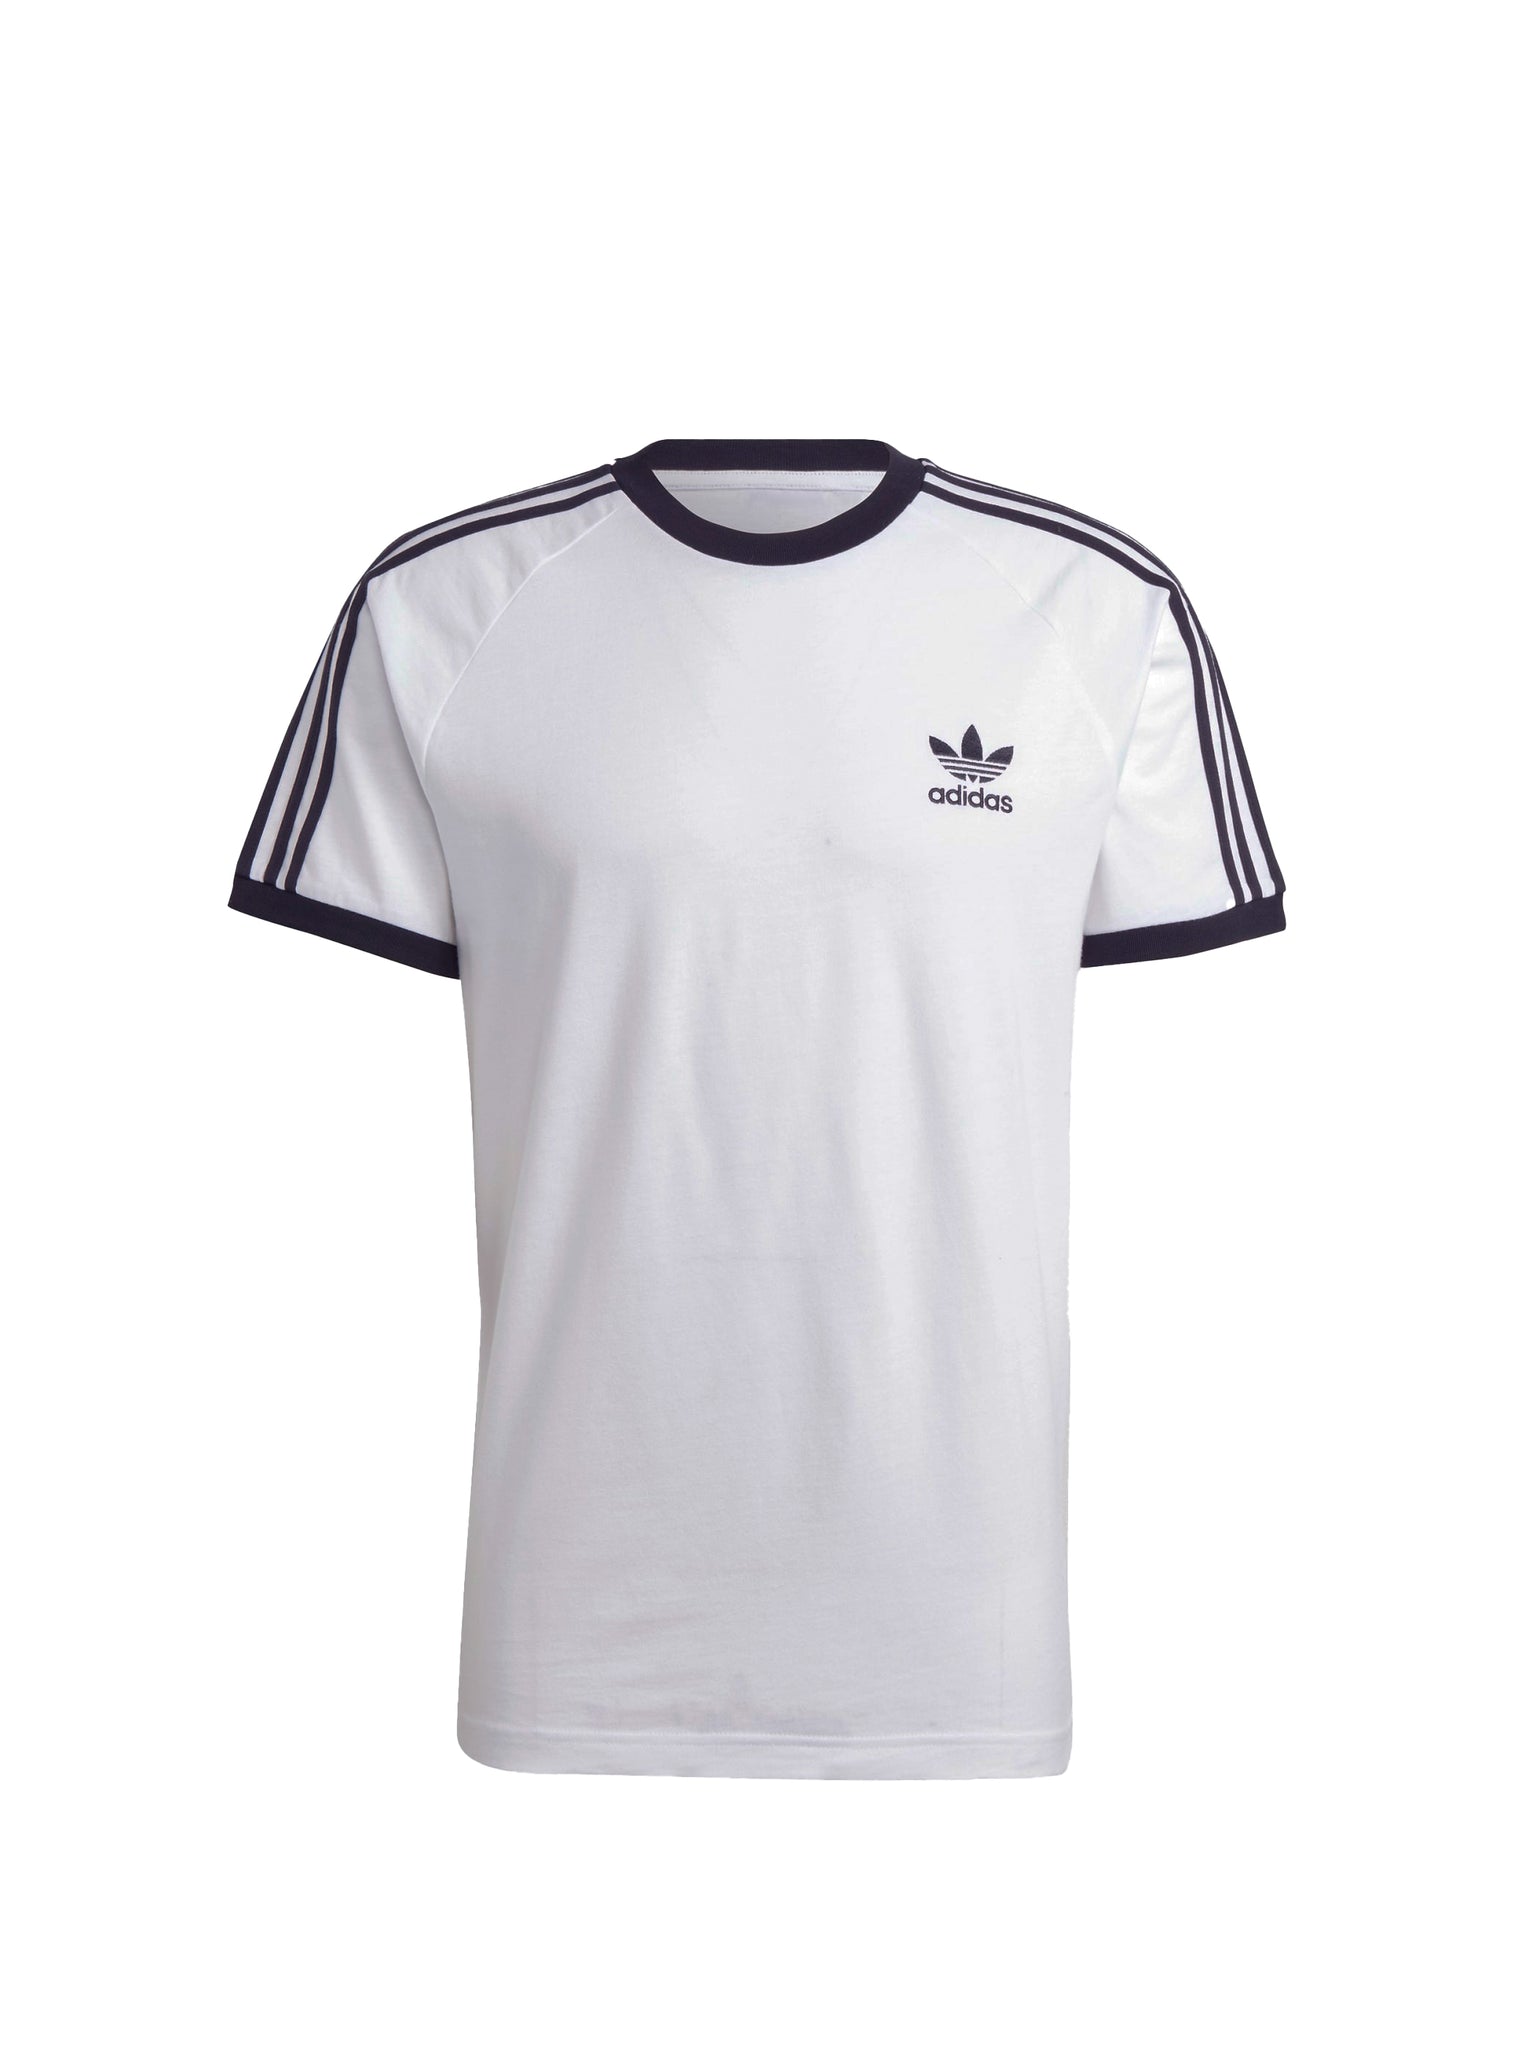 Adidas 3-Stripes Tee White T-Shirt